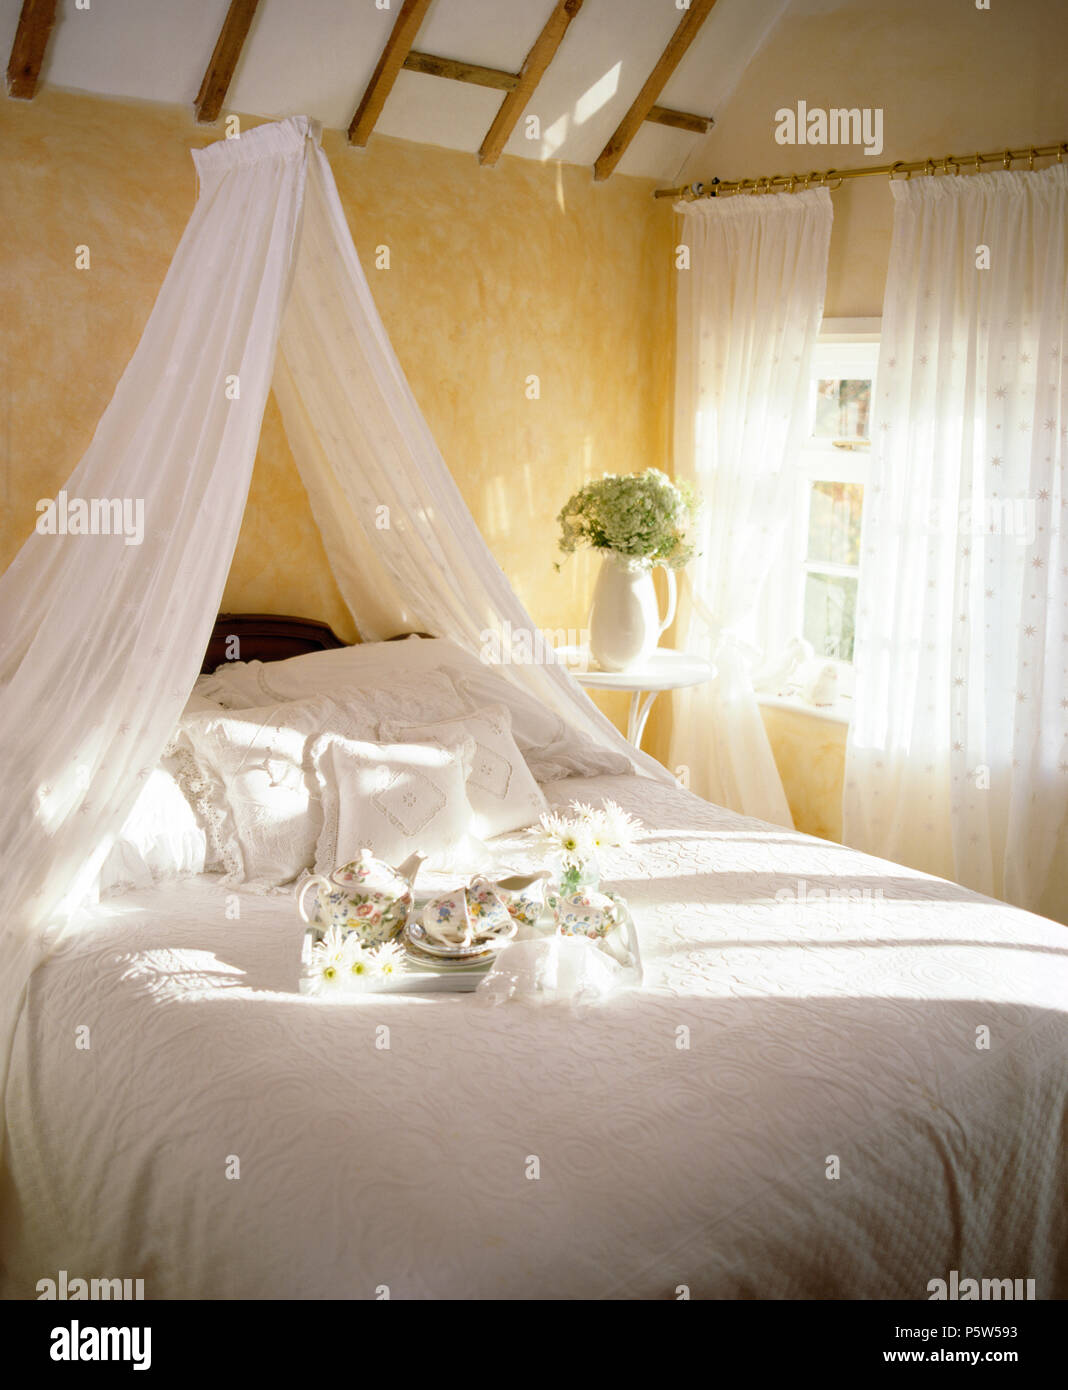 Weißer voile Gardinen über dem Bett mit weißer Bettwäsche im Cottage  Schlafzimmer mit weißem voile Gardinen am Fenster Stockfotografie - Alamy